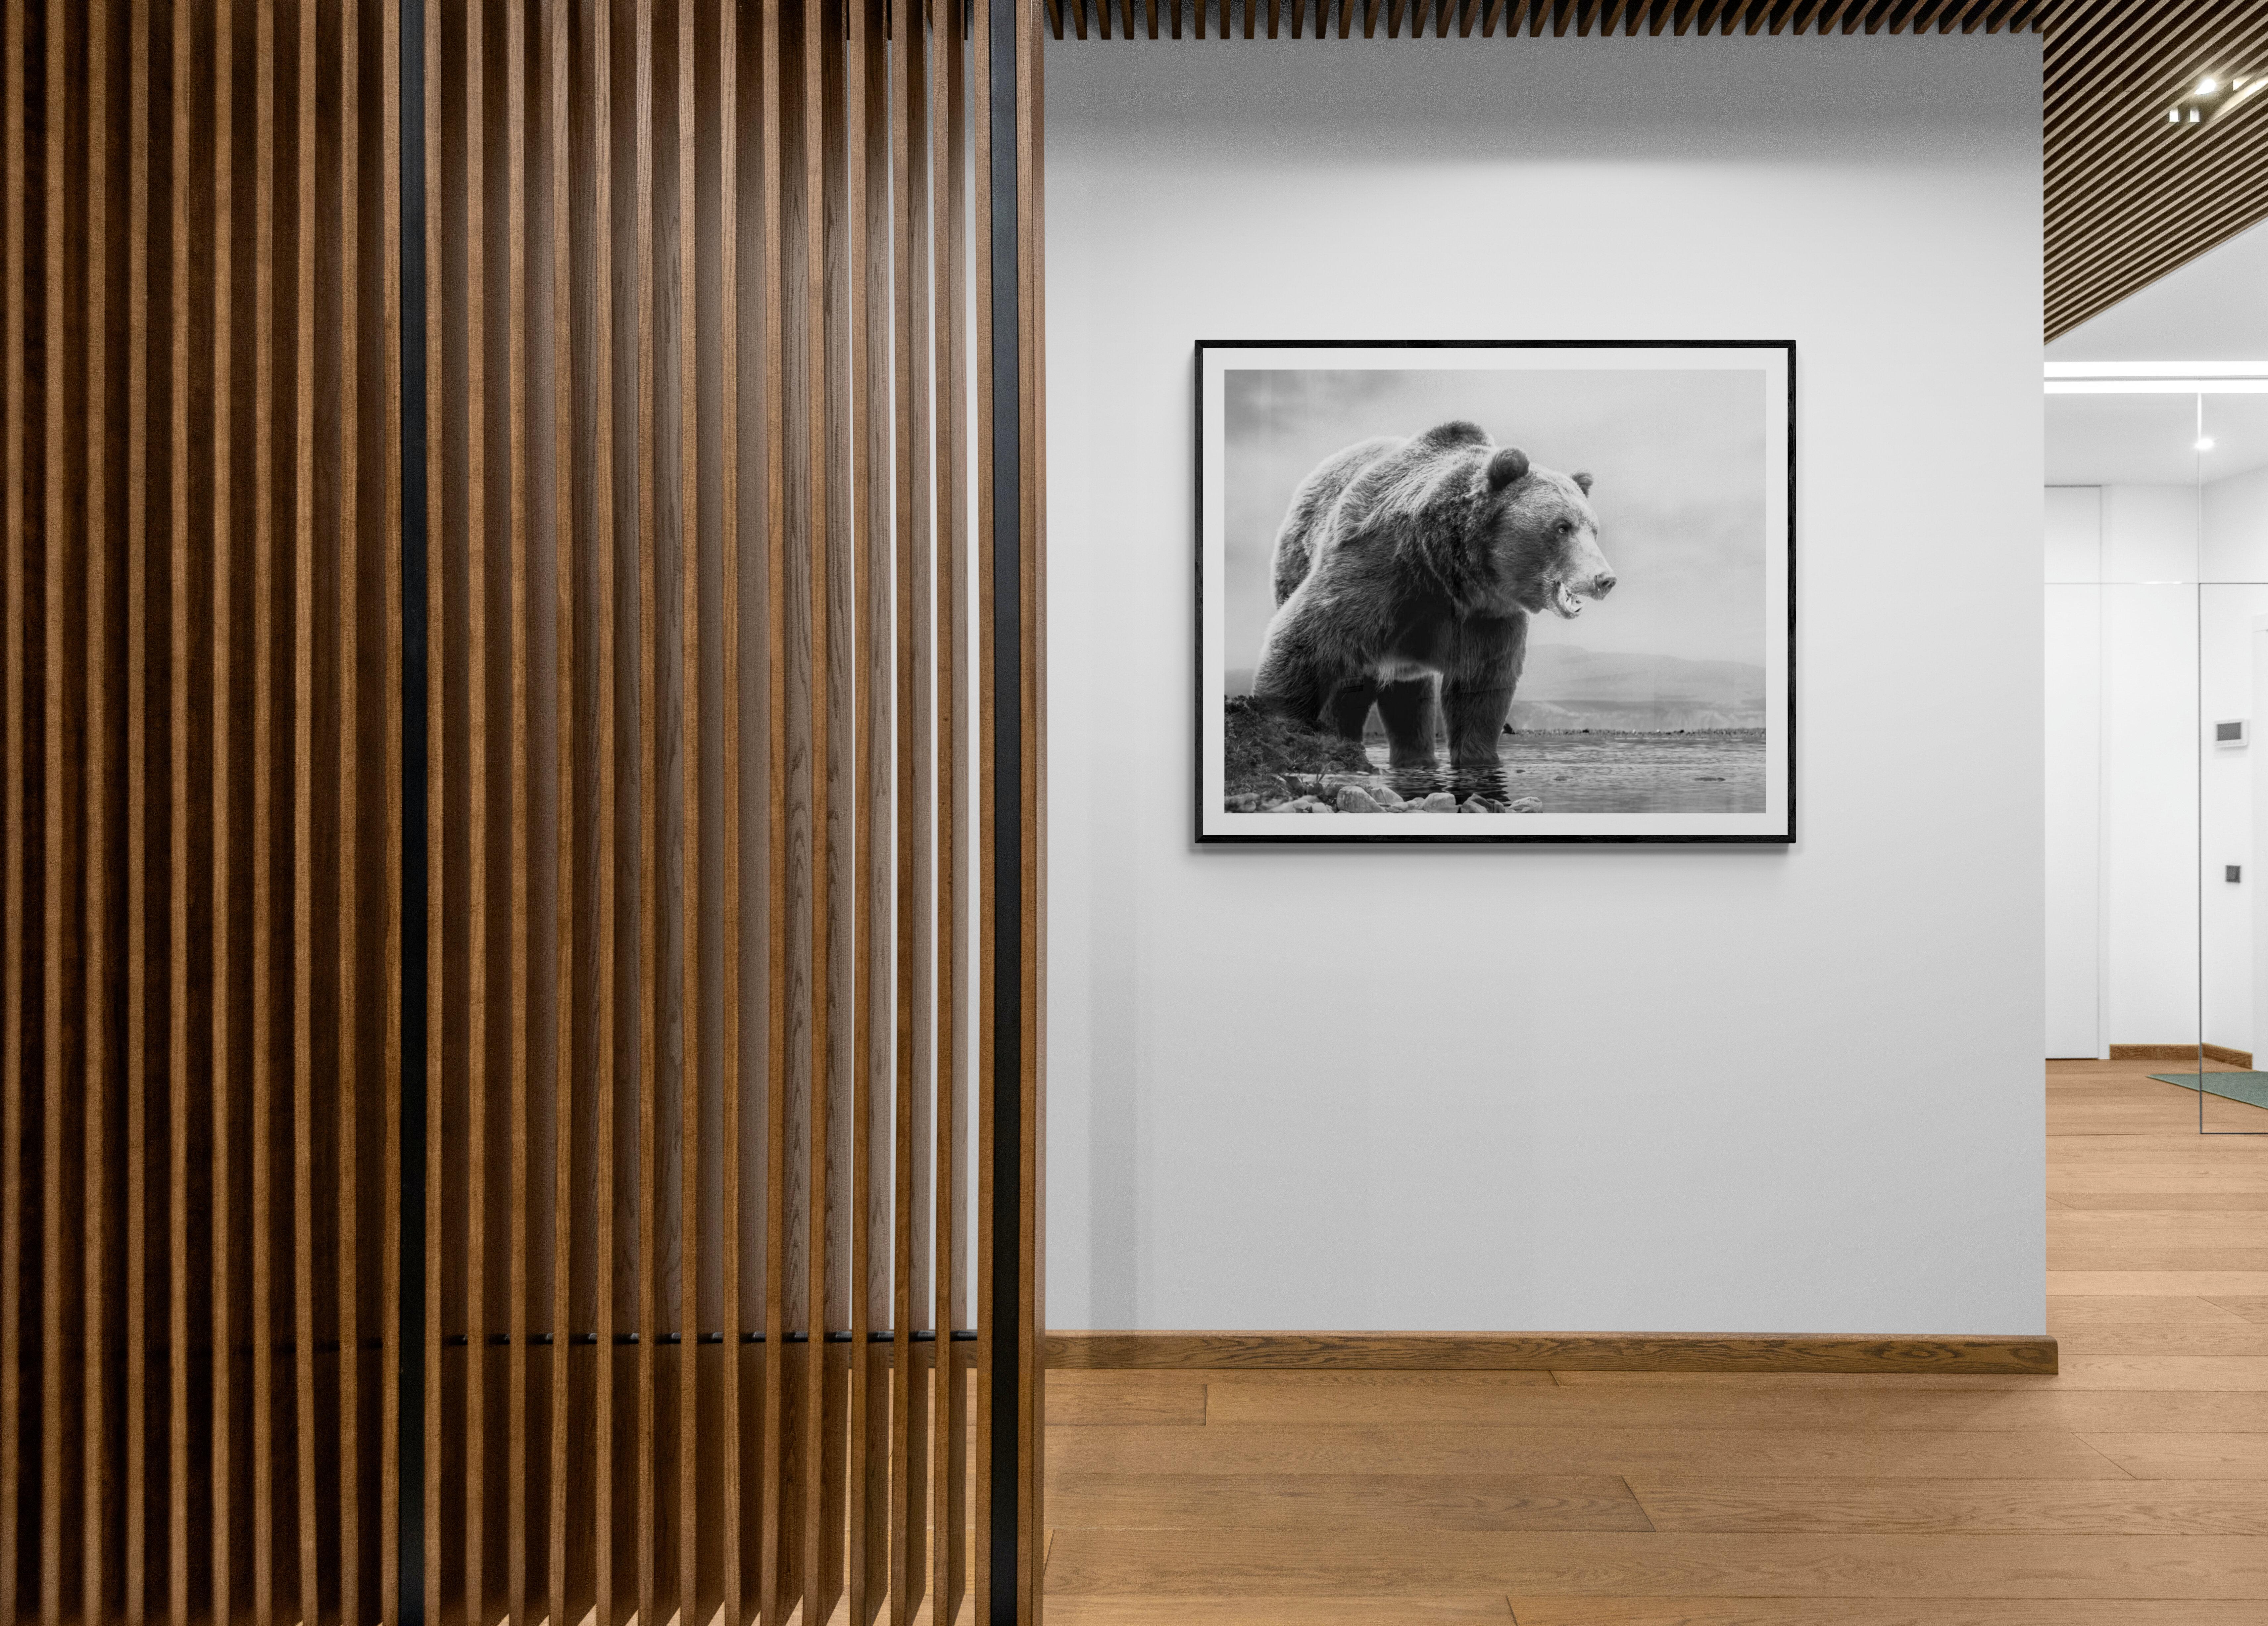 Photographie Kodiak Grizzly Bear « On The Waterfront » (ours au bord de l'eau) 36x48, non signée - Print de Shane Russeck